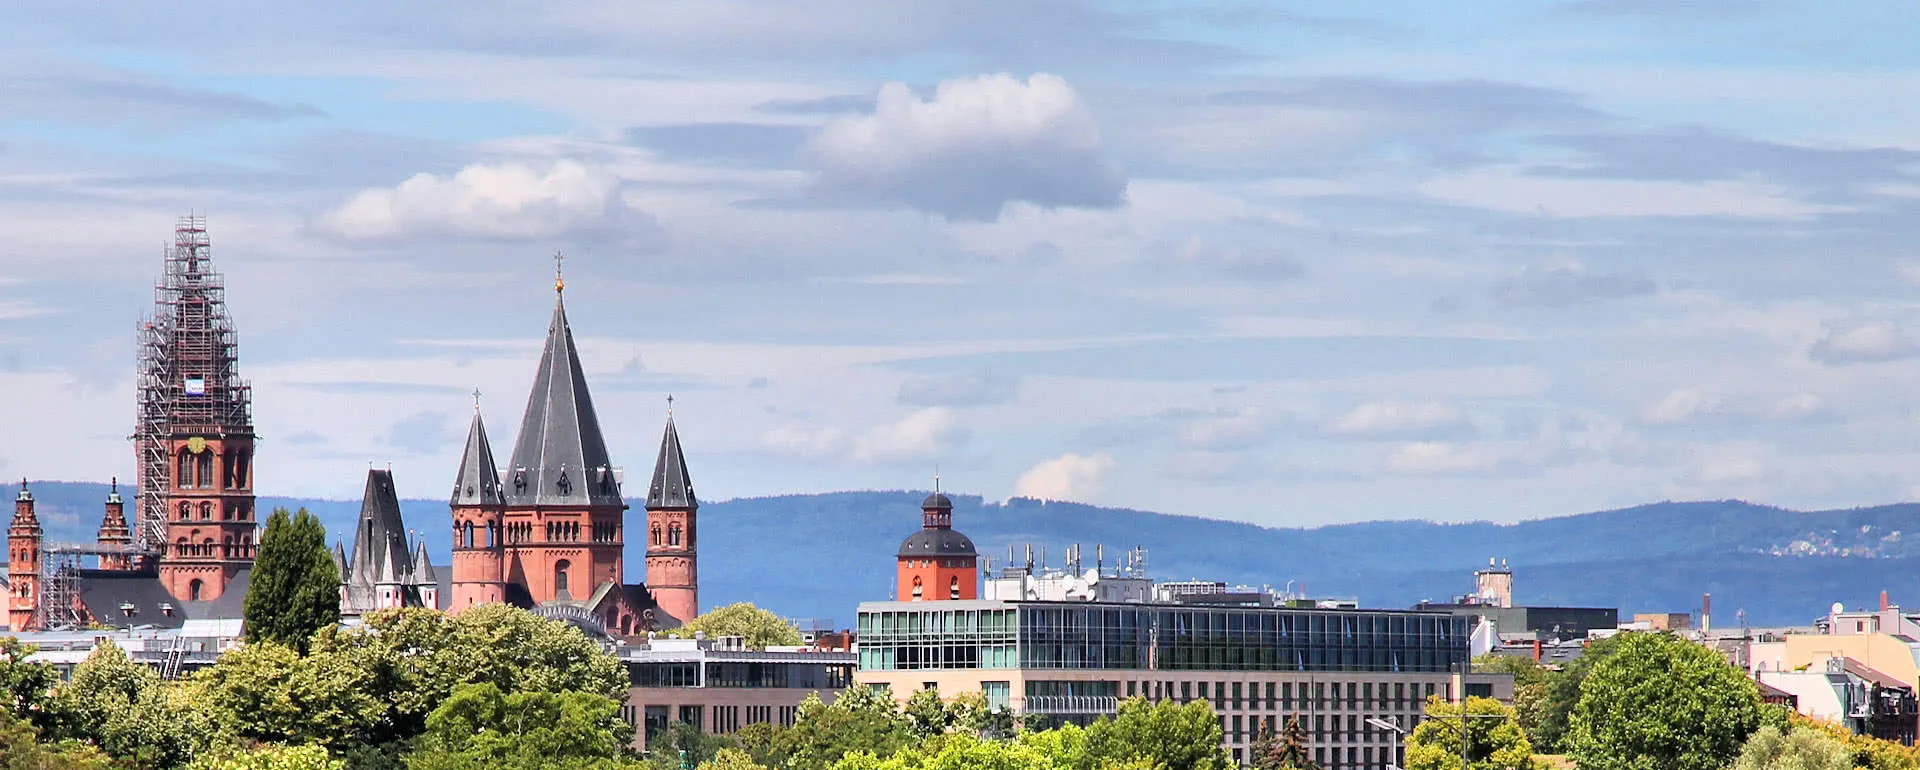 Mainz - das Reiseziel mit Jugendherbergen